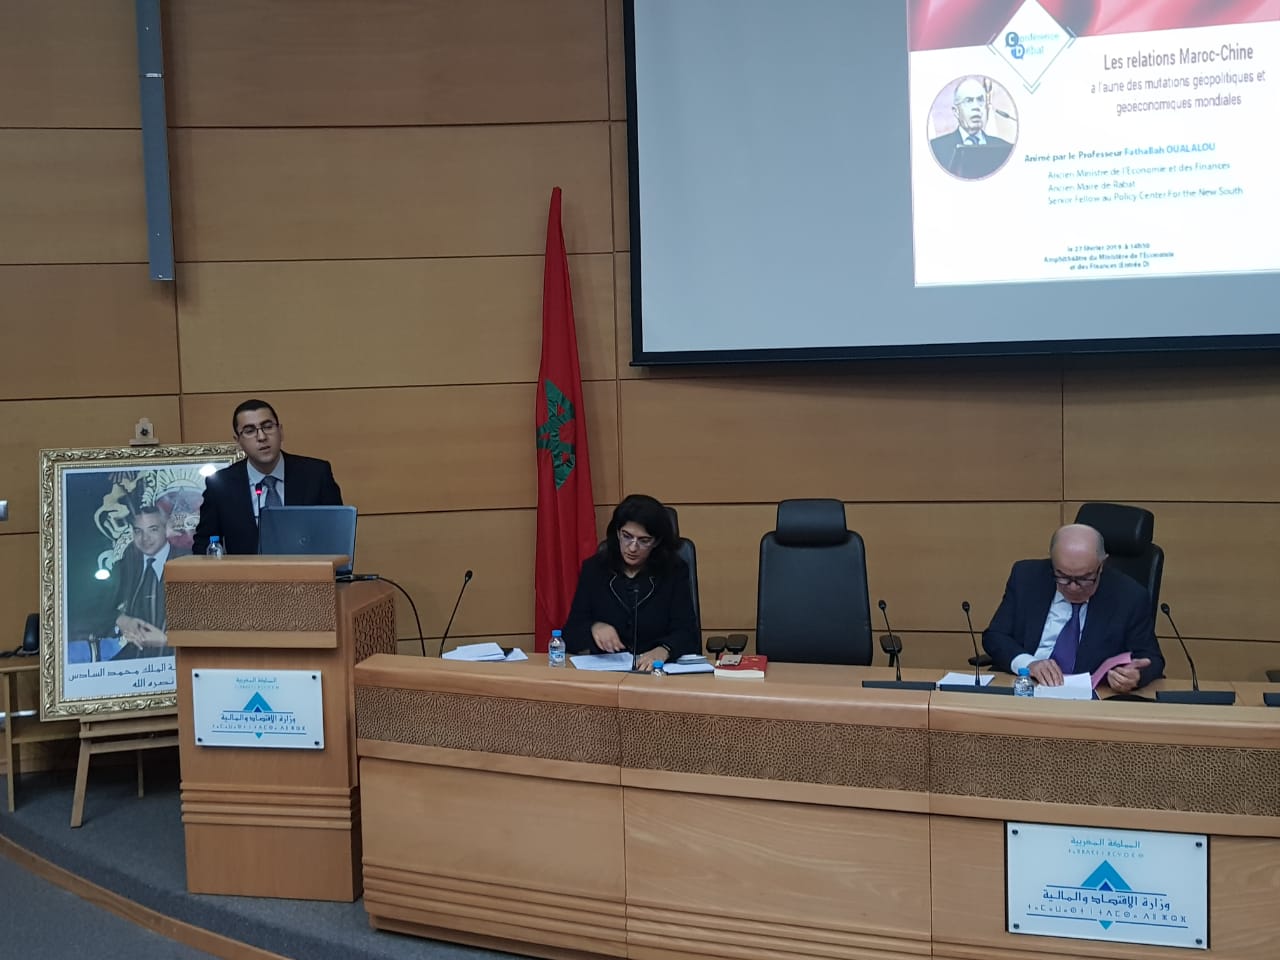 Conférence-débat : Les relations Maroc-Chine à l’aune des mutations géopolitiques et géoéconomiques mondiales